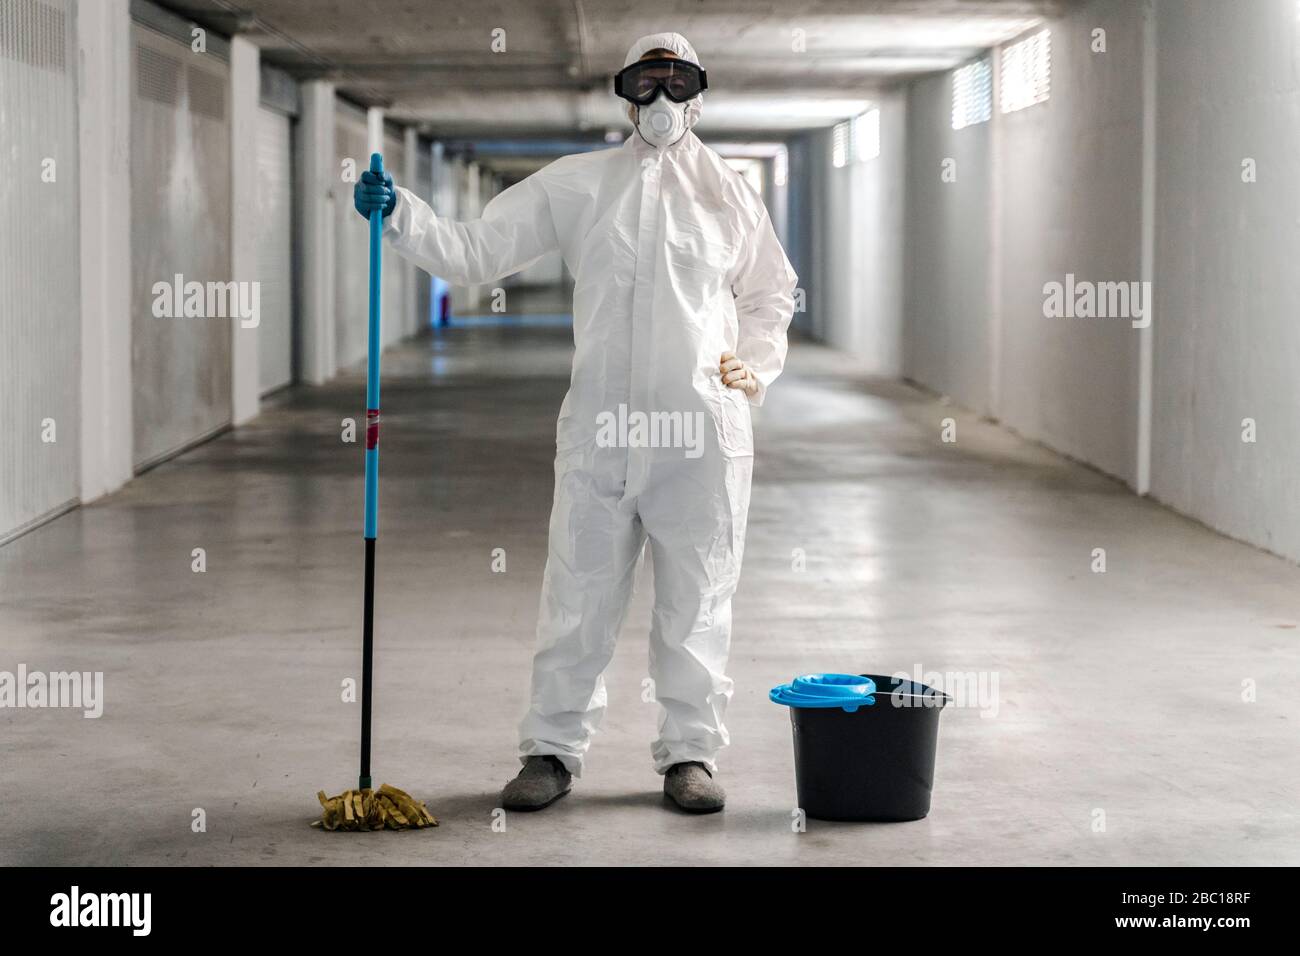 Mujer usando ropa protectora limpiando el suelo del aparcamiento Foto de stock